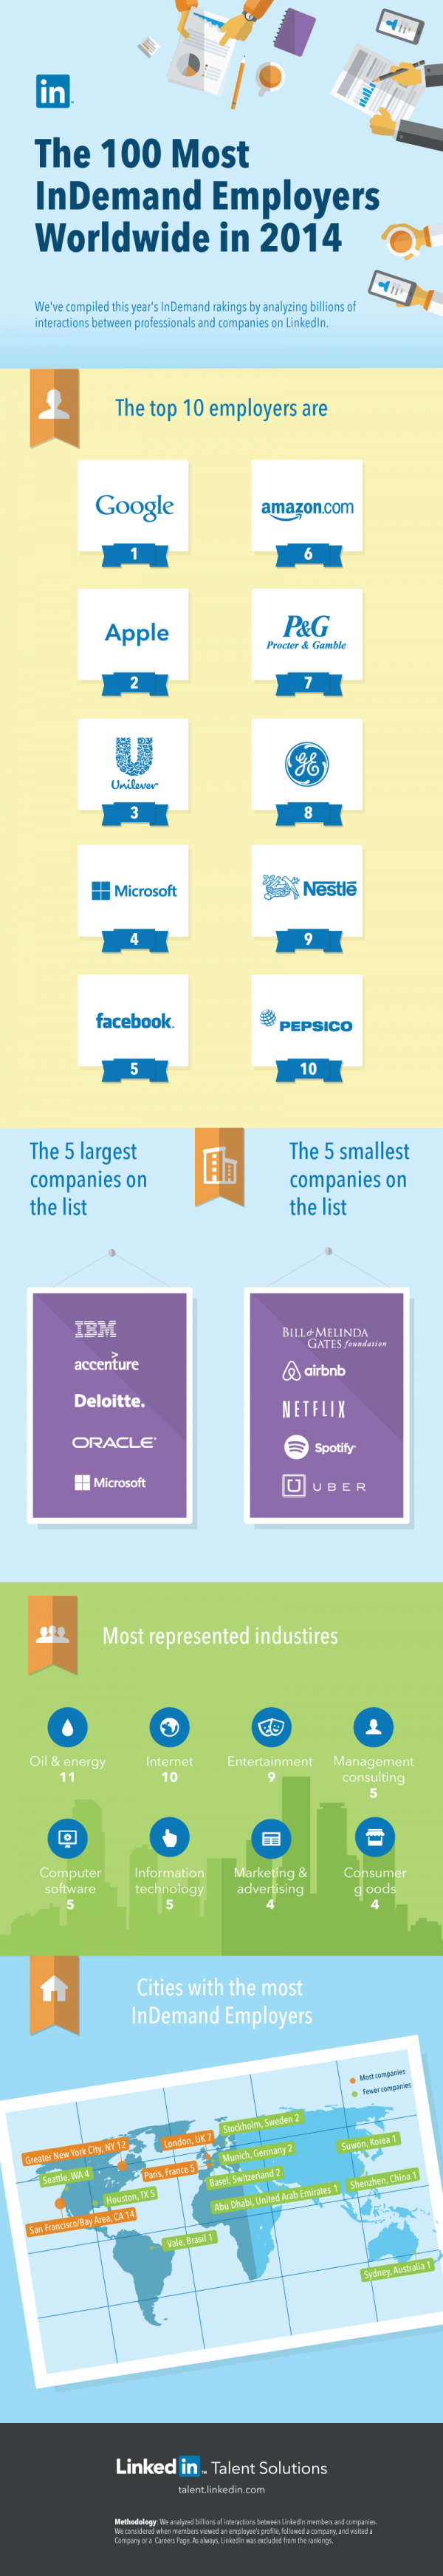 Die besten und gefragtesten Arbeitgeber 2014 Infographic von LinkedIn